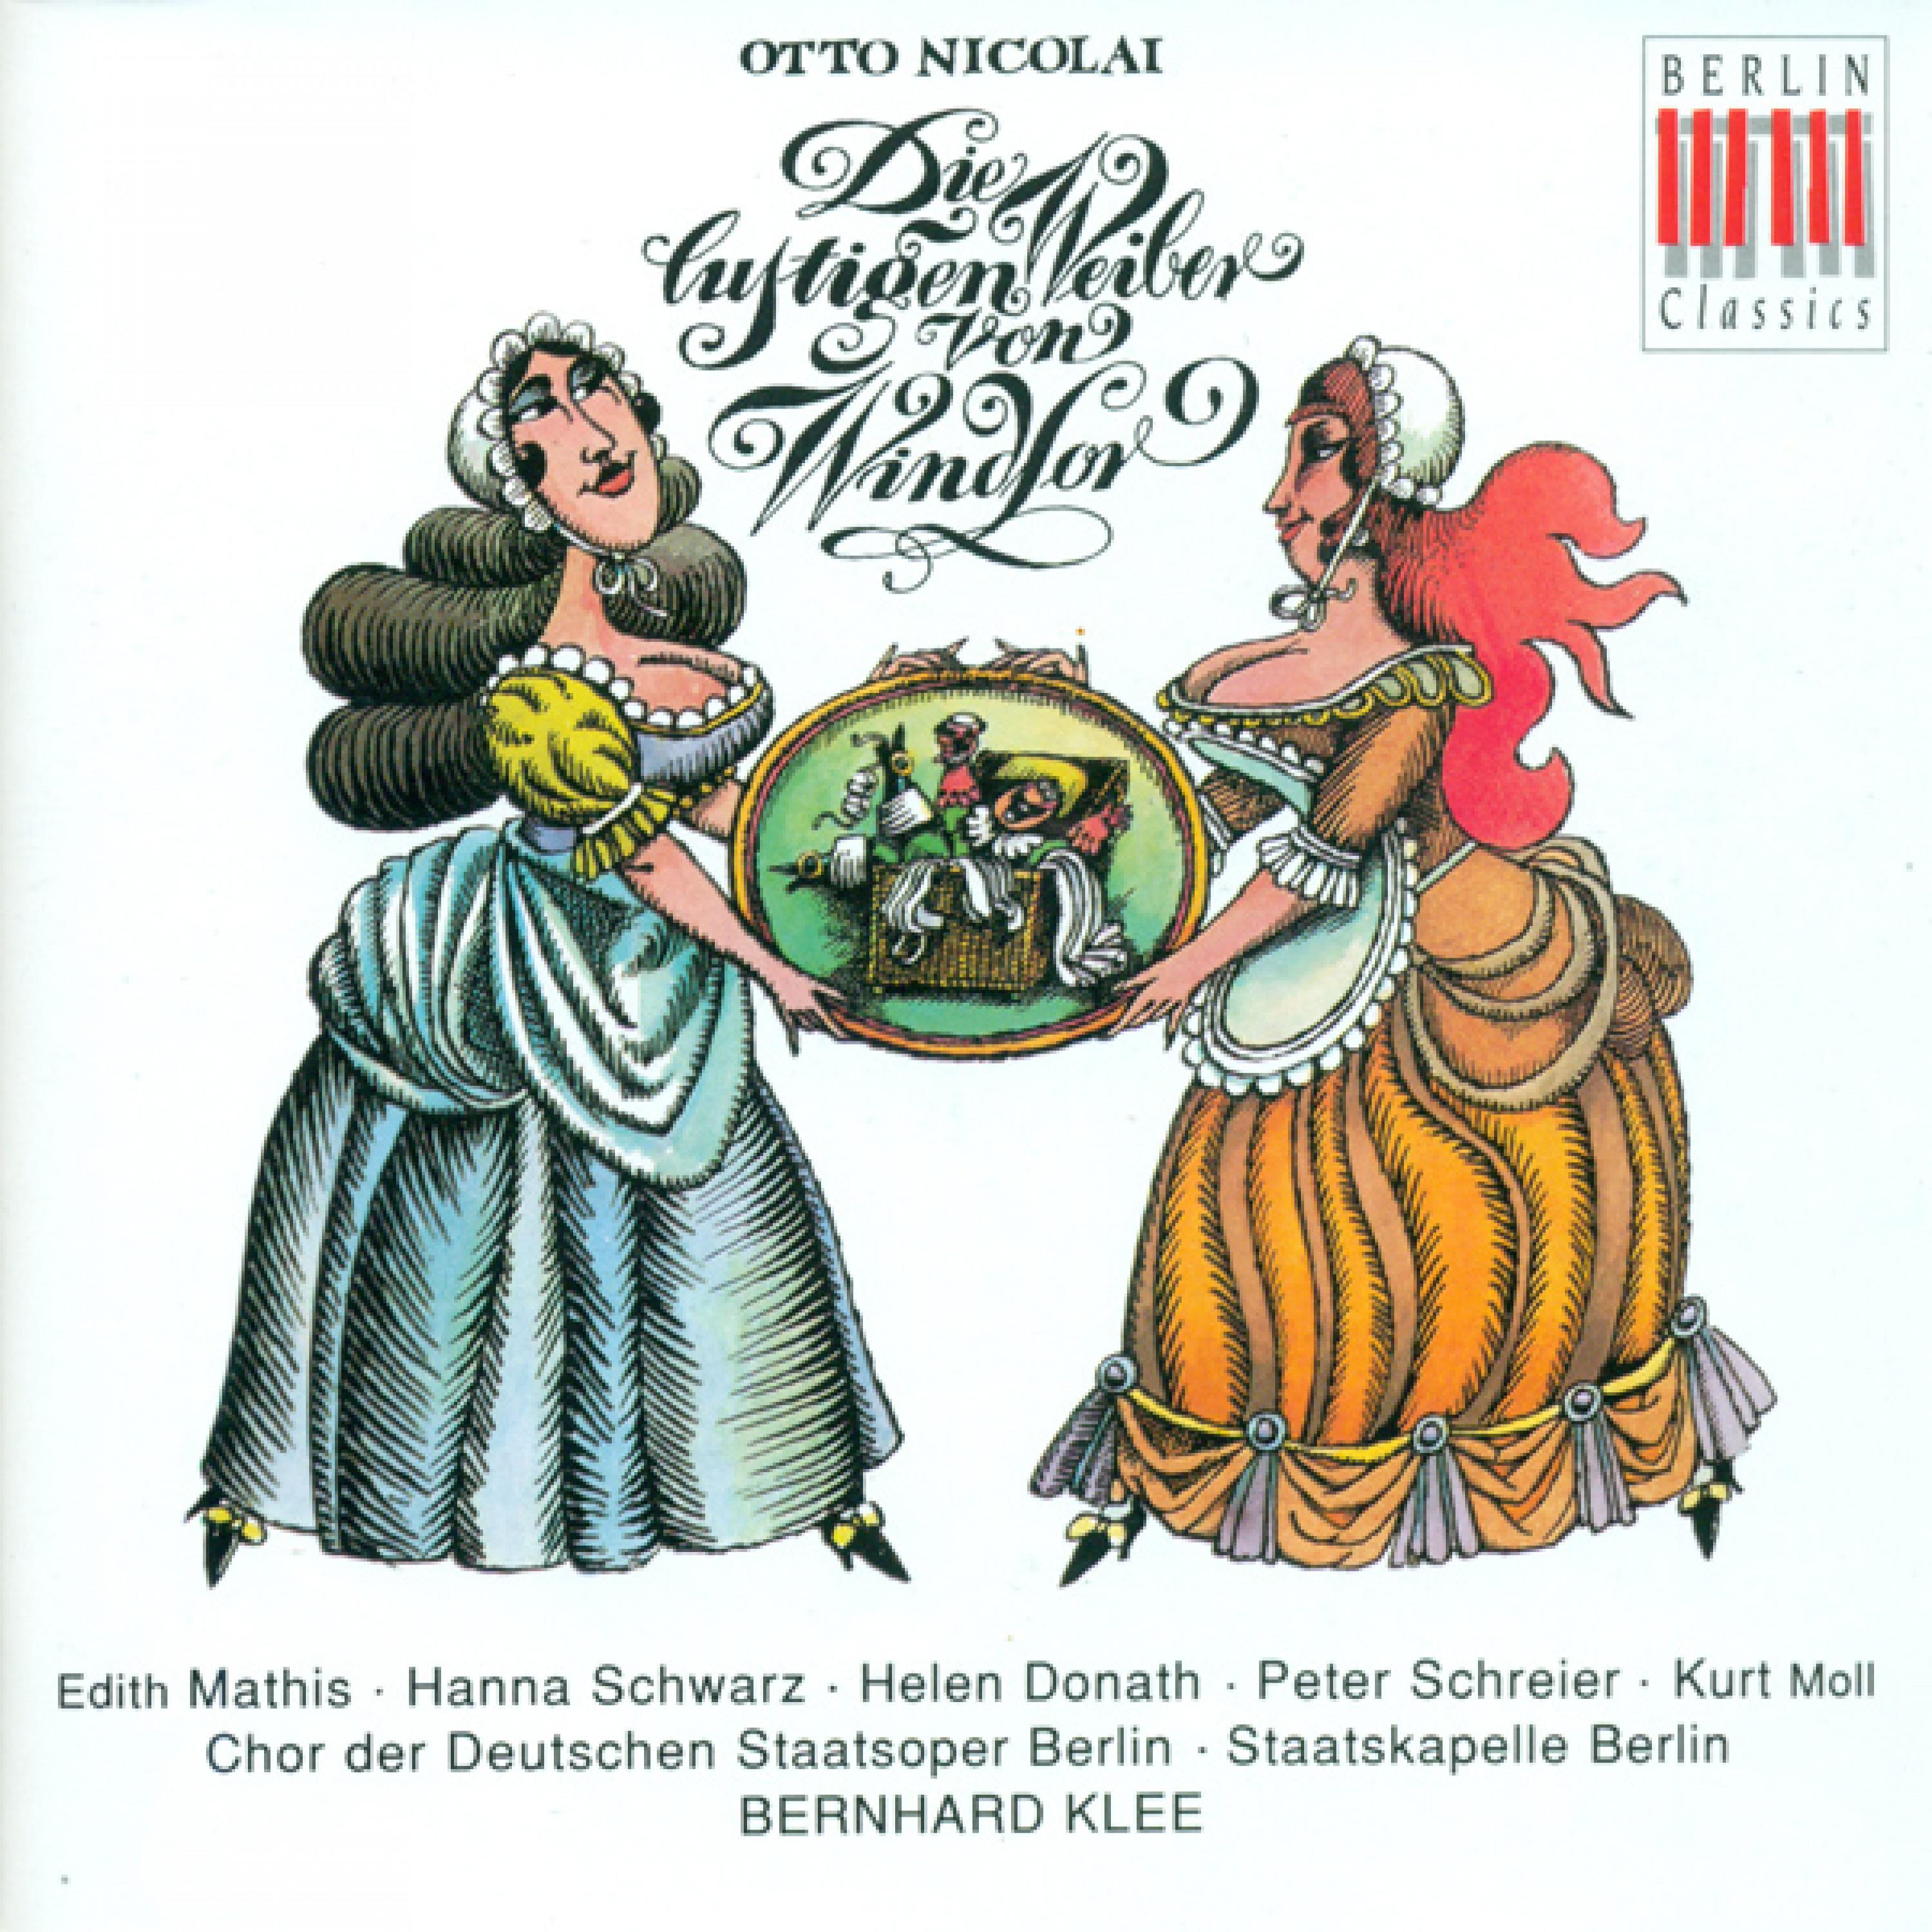 Die lustigen Weiber von Windsor (The Merry Wives of Windsor): Act III: O susser Mond! (Chorus, Falstaff)